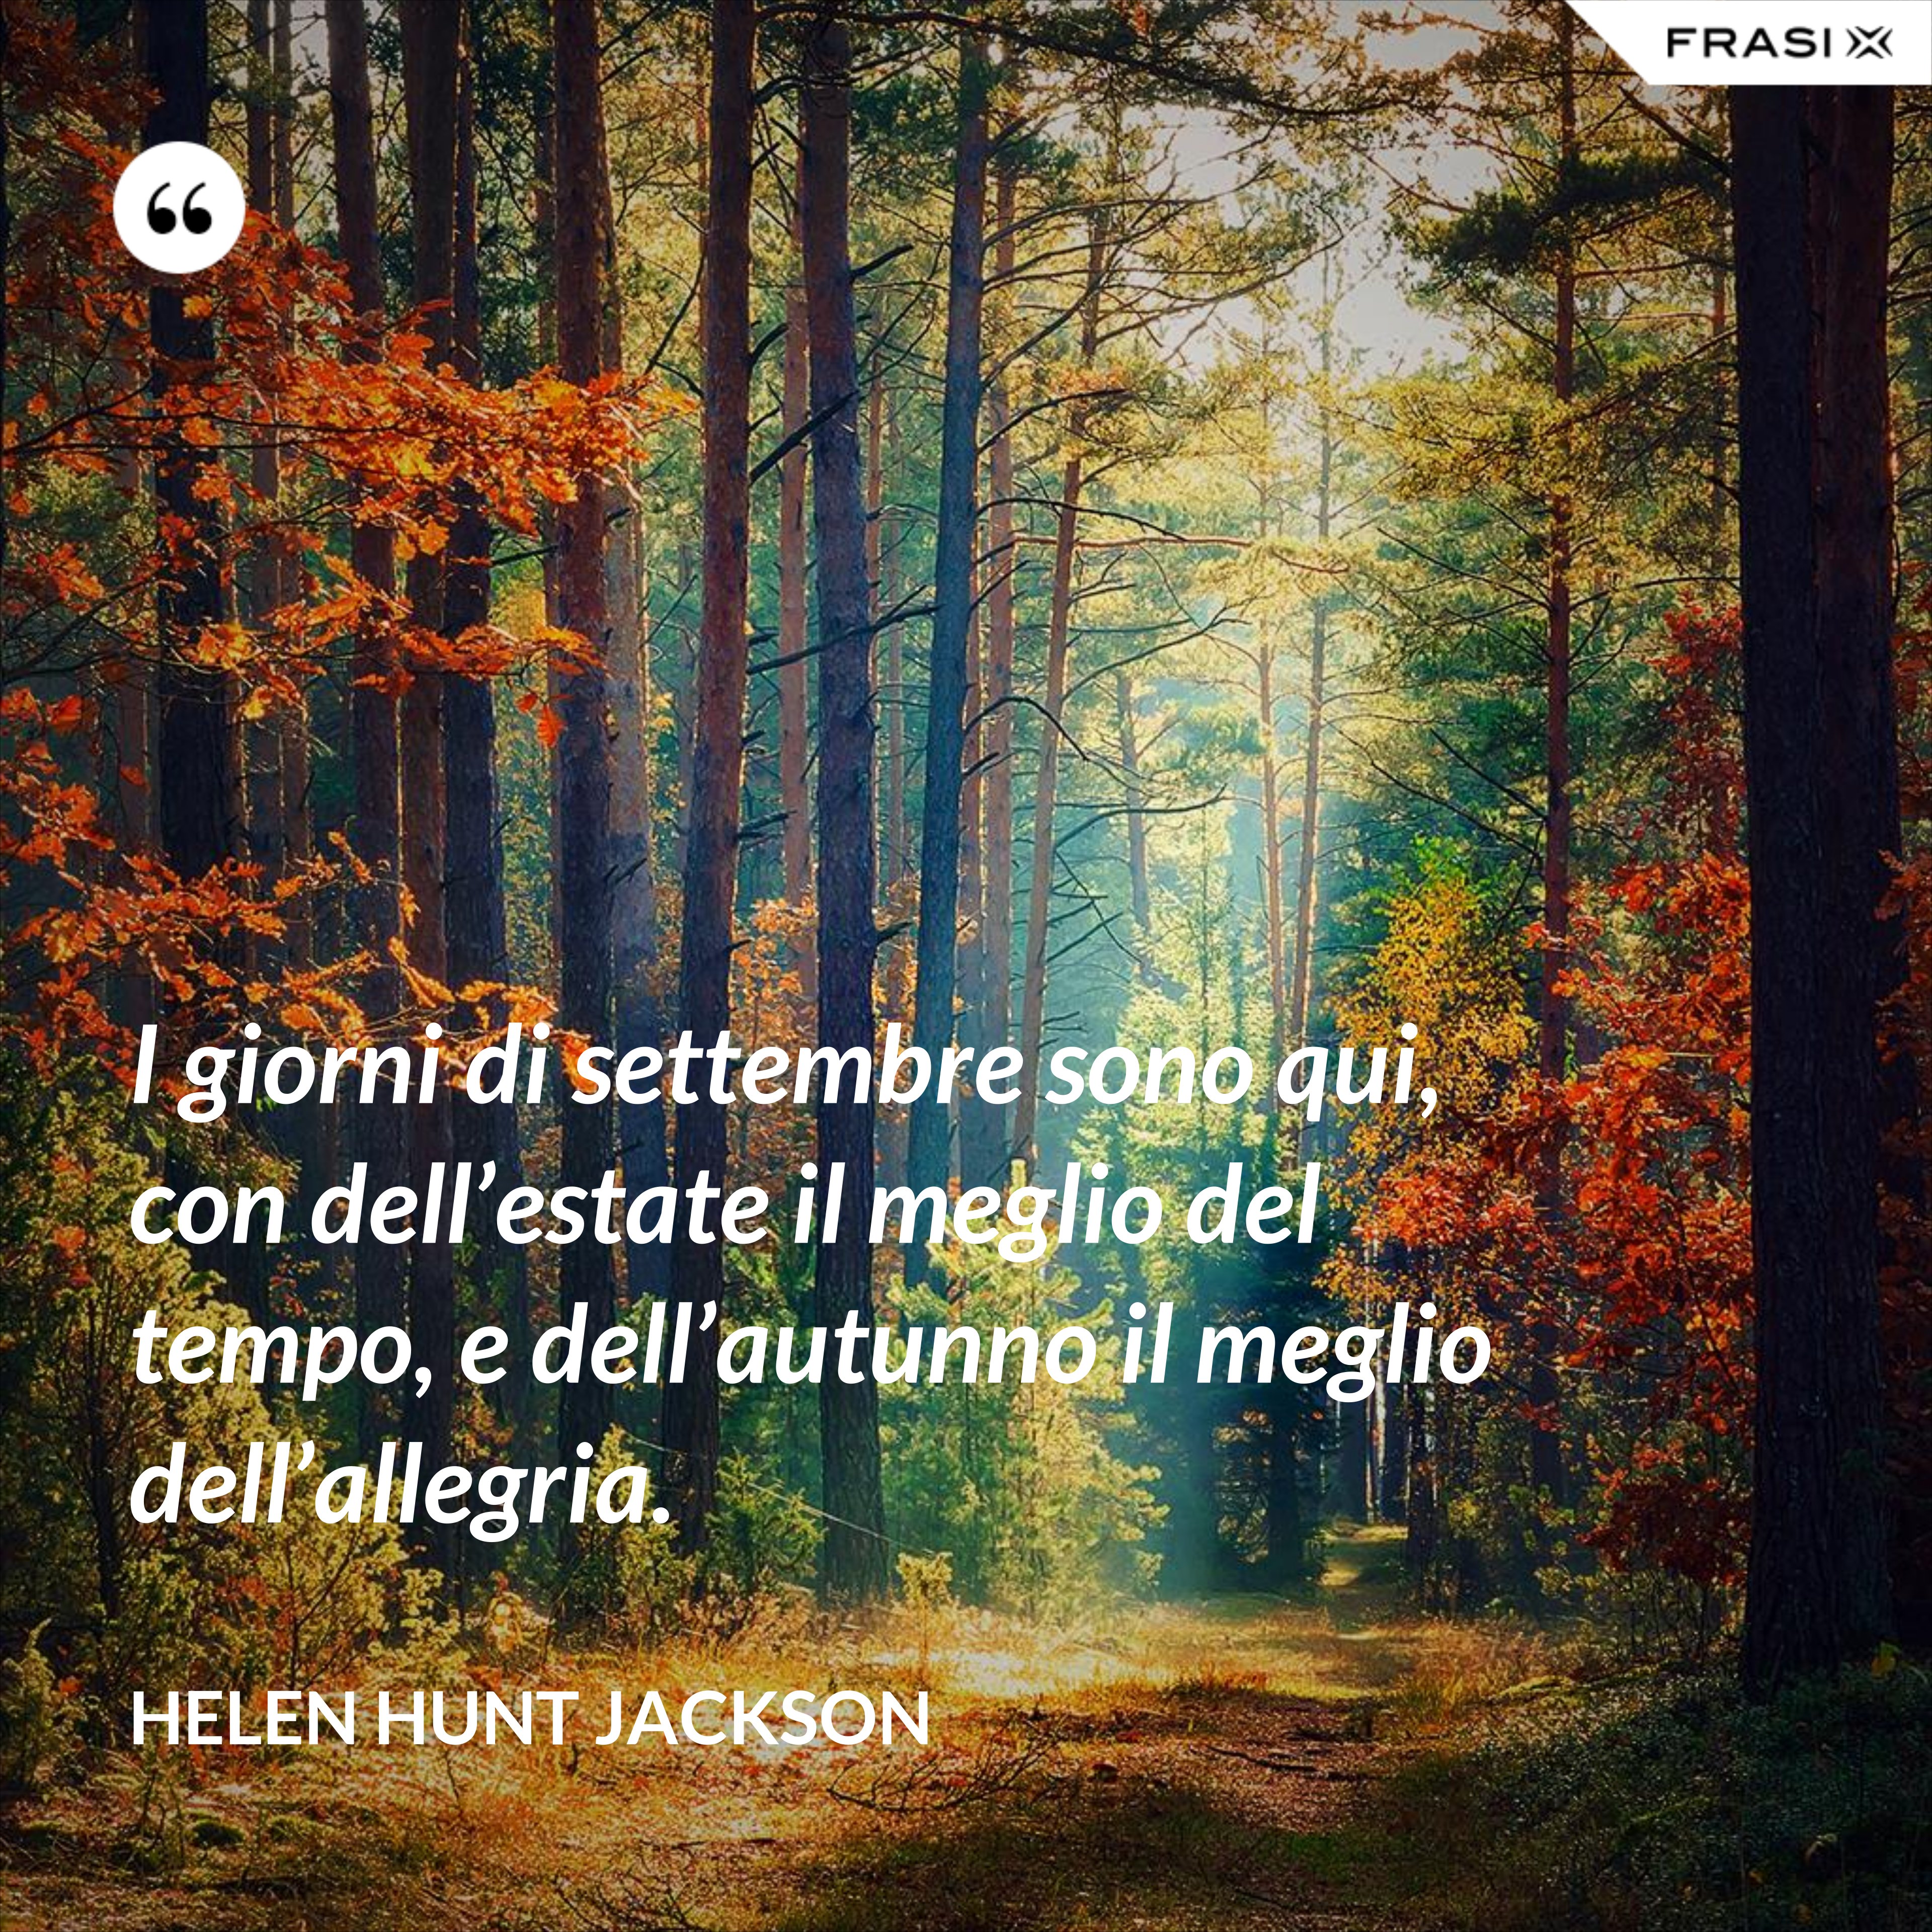 I giorni di settembre sono qui, con dell’estate il meglio del tempo, e dell’autunno il meglio dell’allegria. - Helen Hunt Jackson